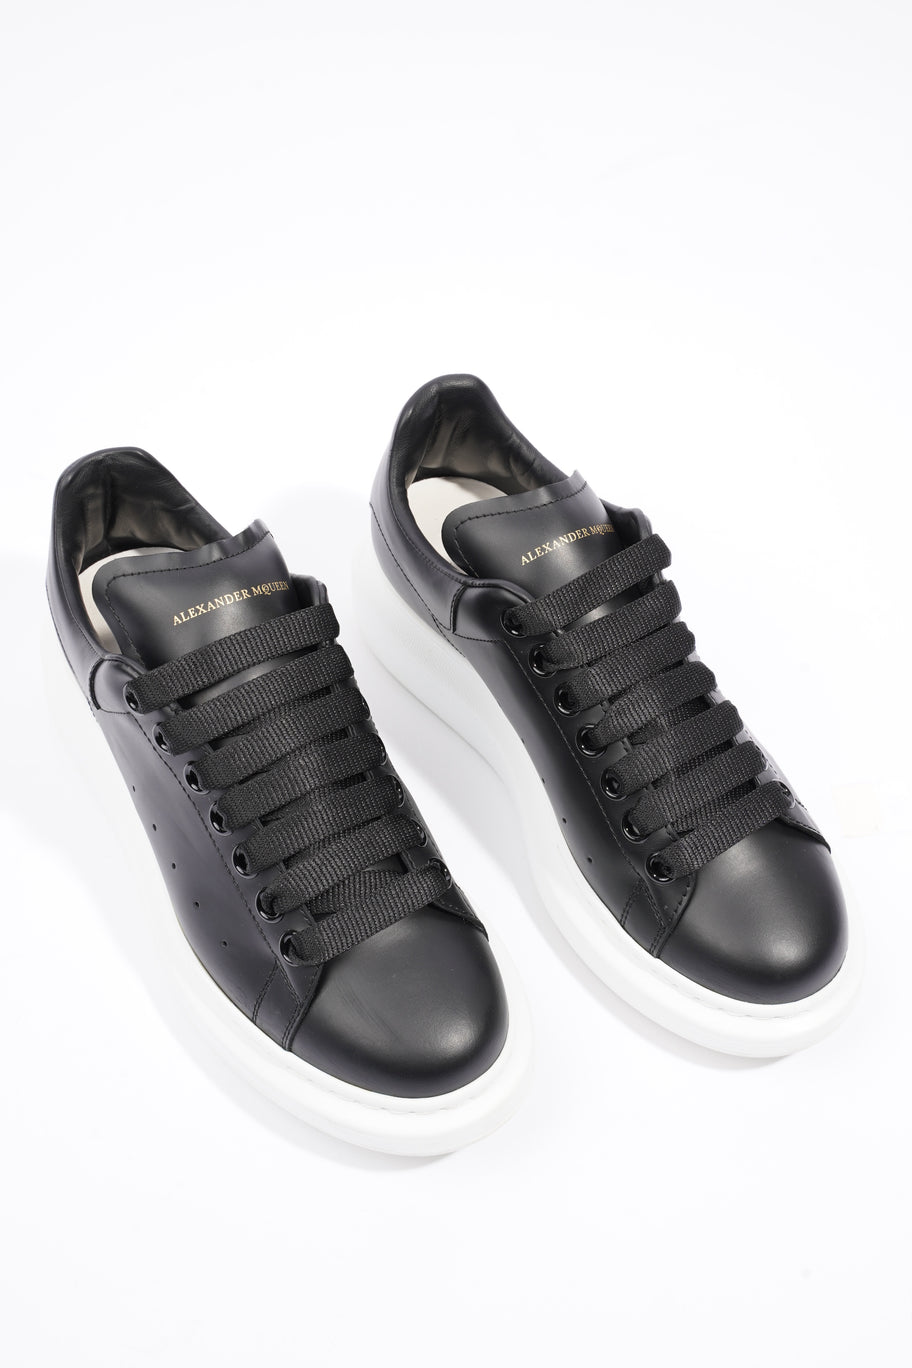 Alexander McQueen Oversized Sneakers Black Leather EU 38 UK 5 Image 8